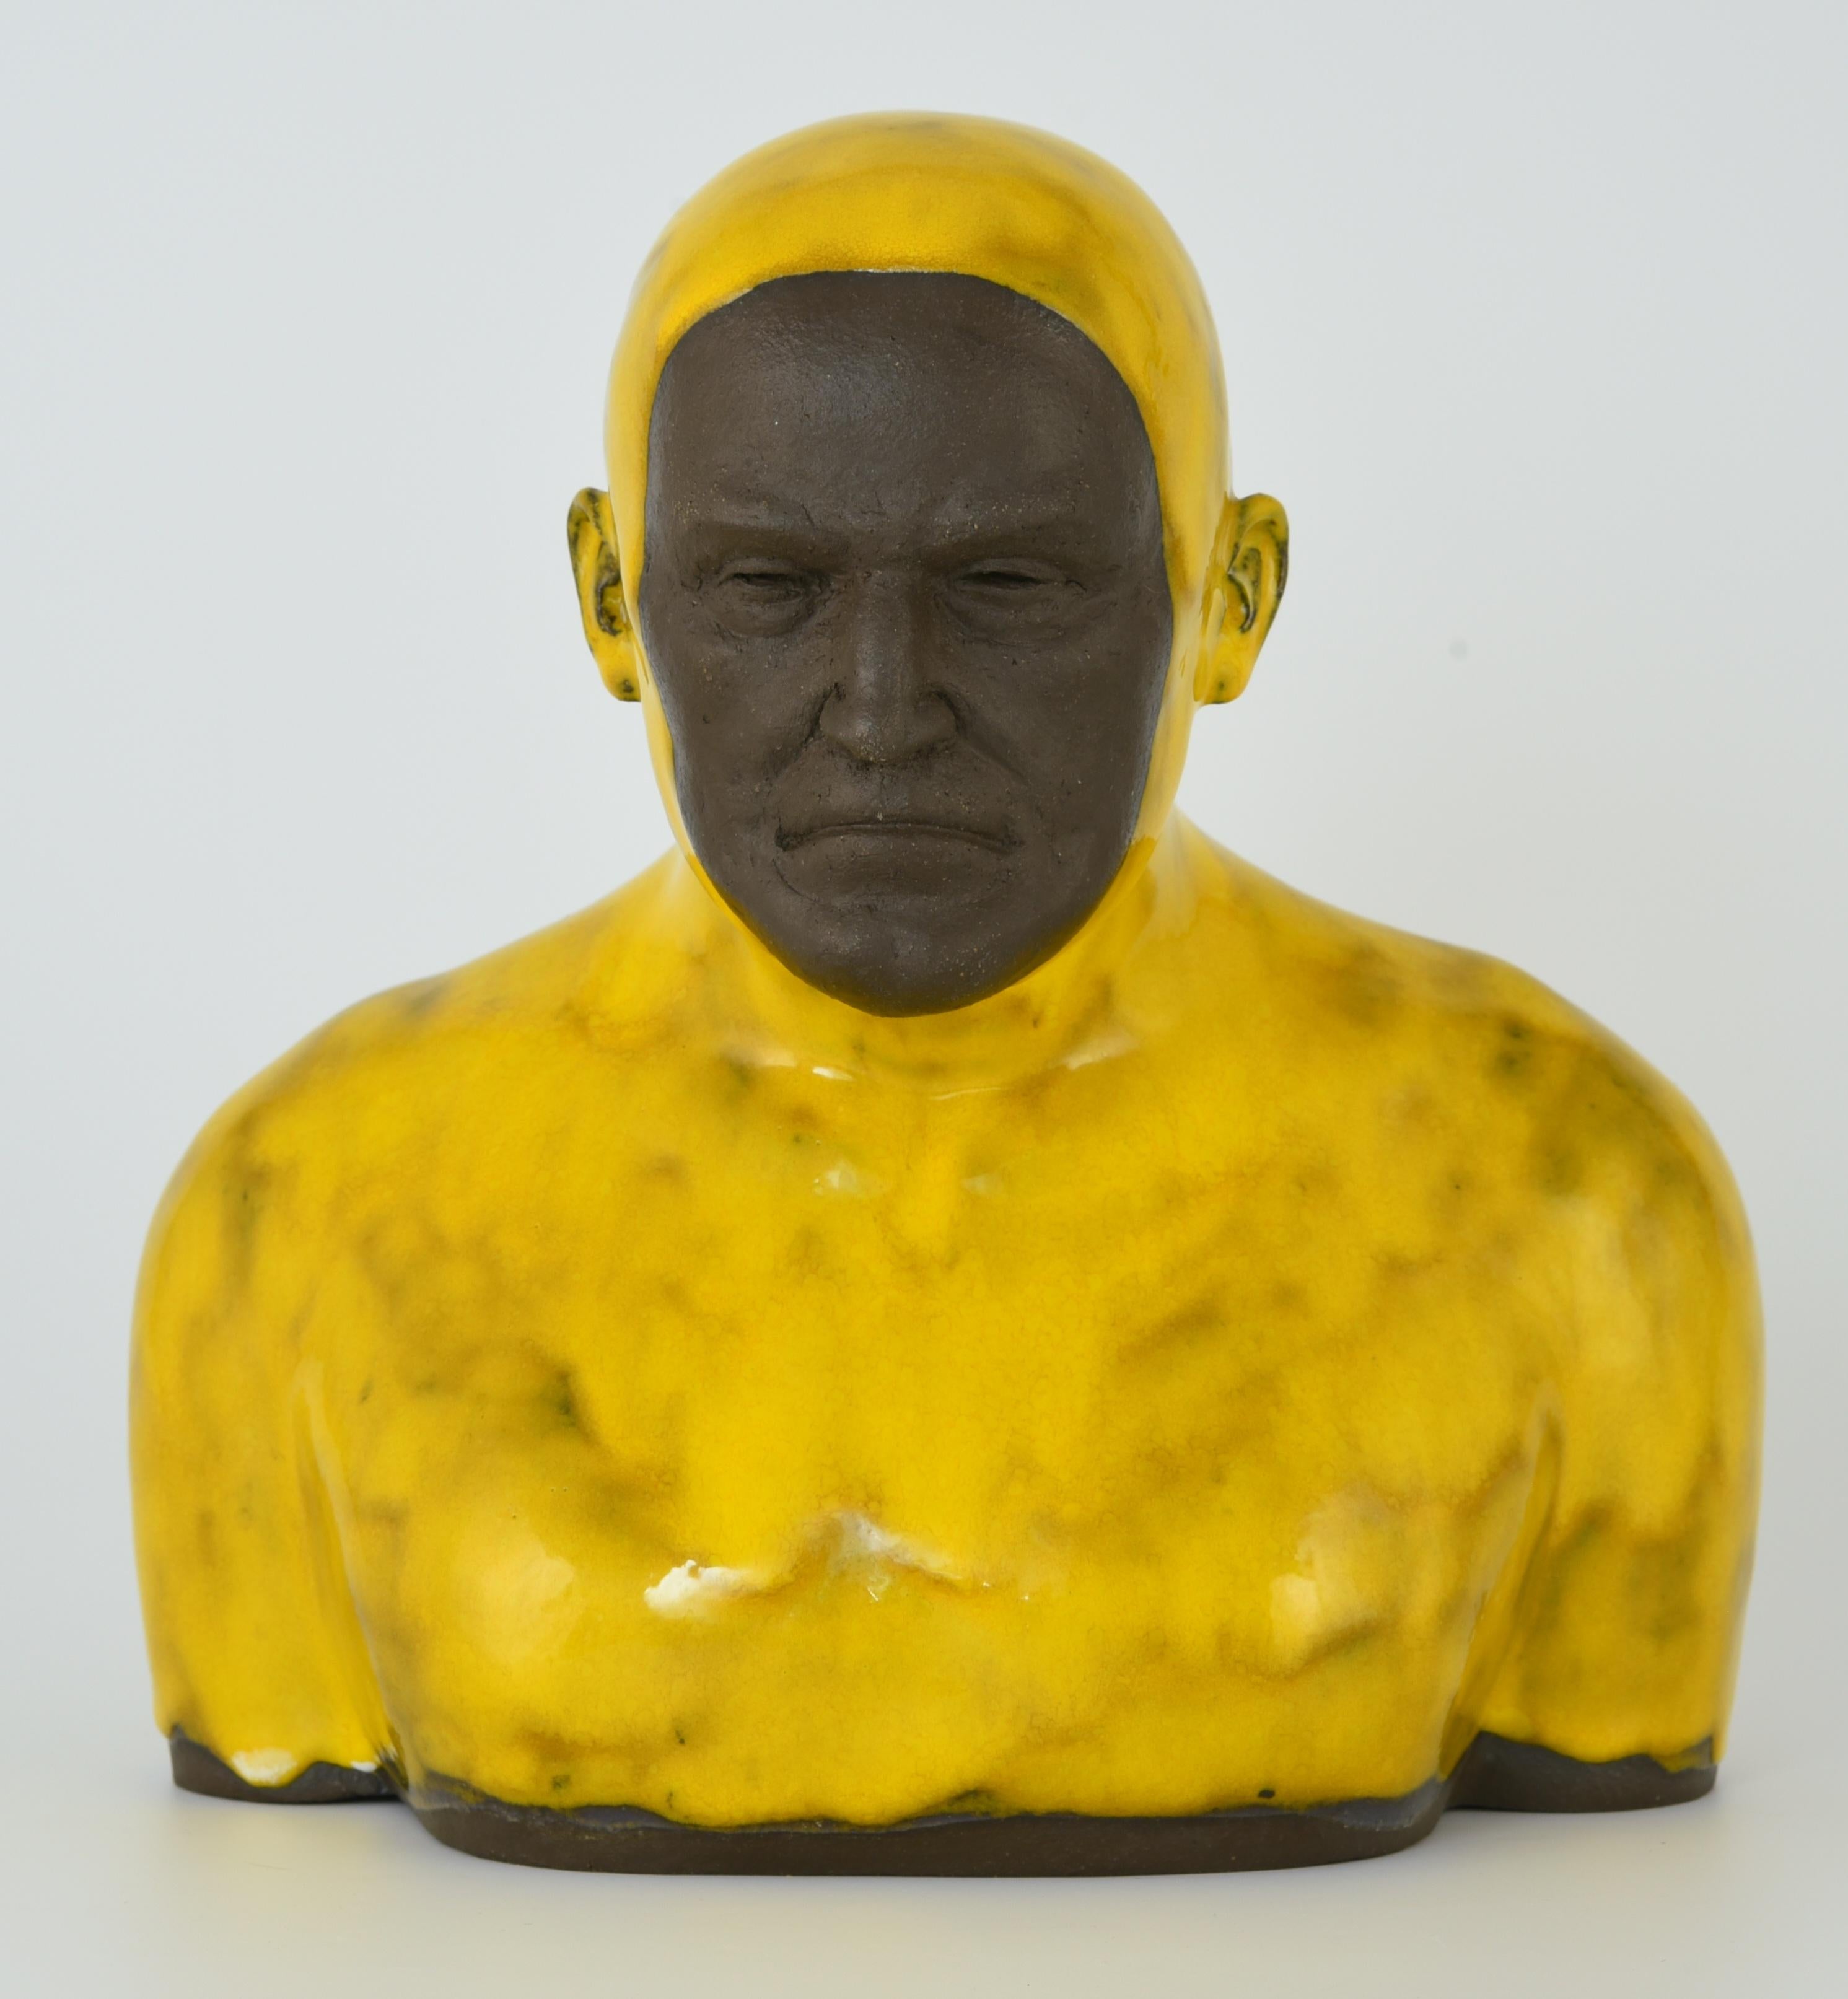 Tomasz Bielak Figurative Sculpture - Yellow Swimmer 2 Large - Handmade Modern Glazed Ceramics Sculpture, Man Portrait